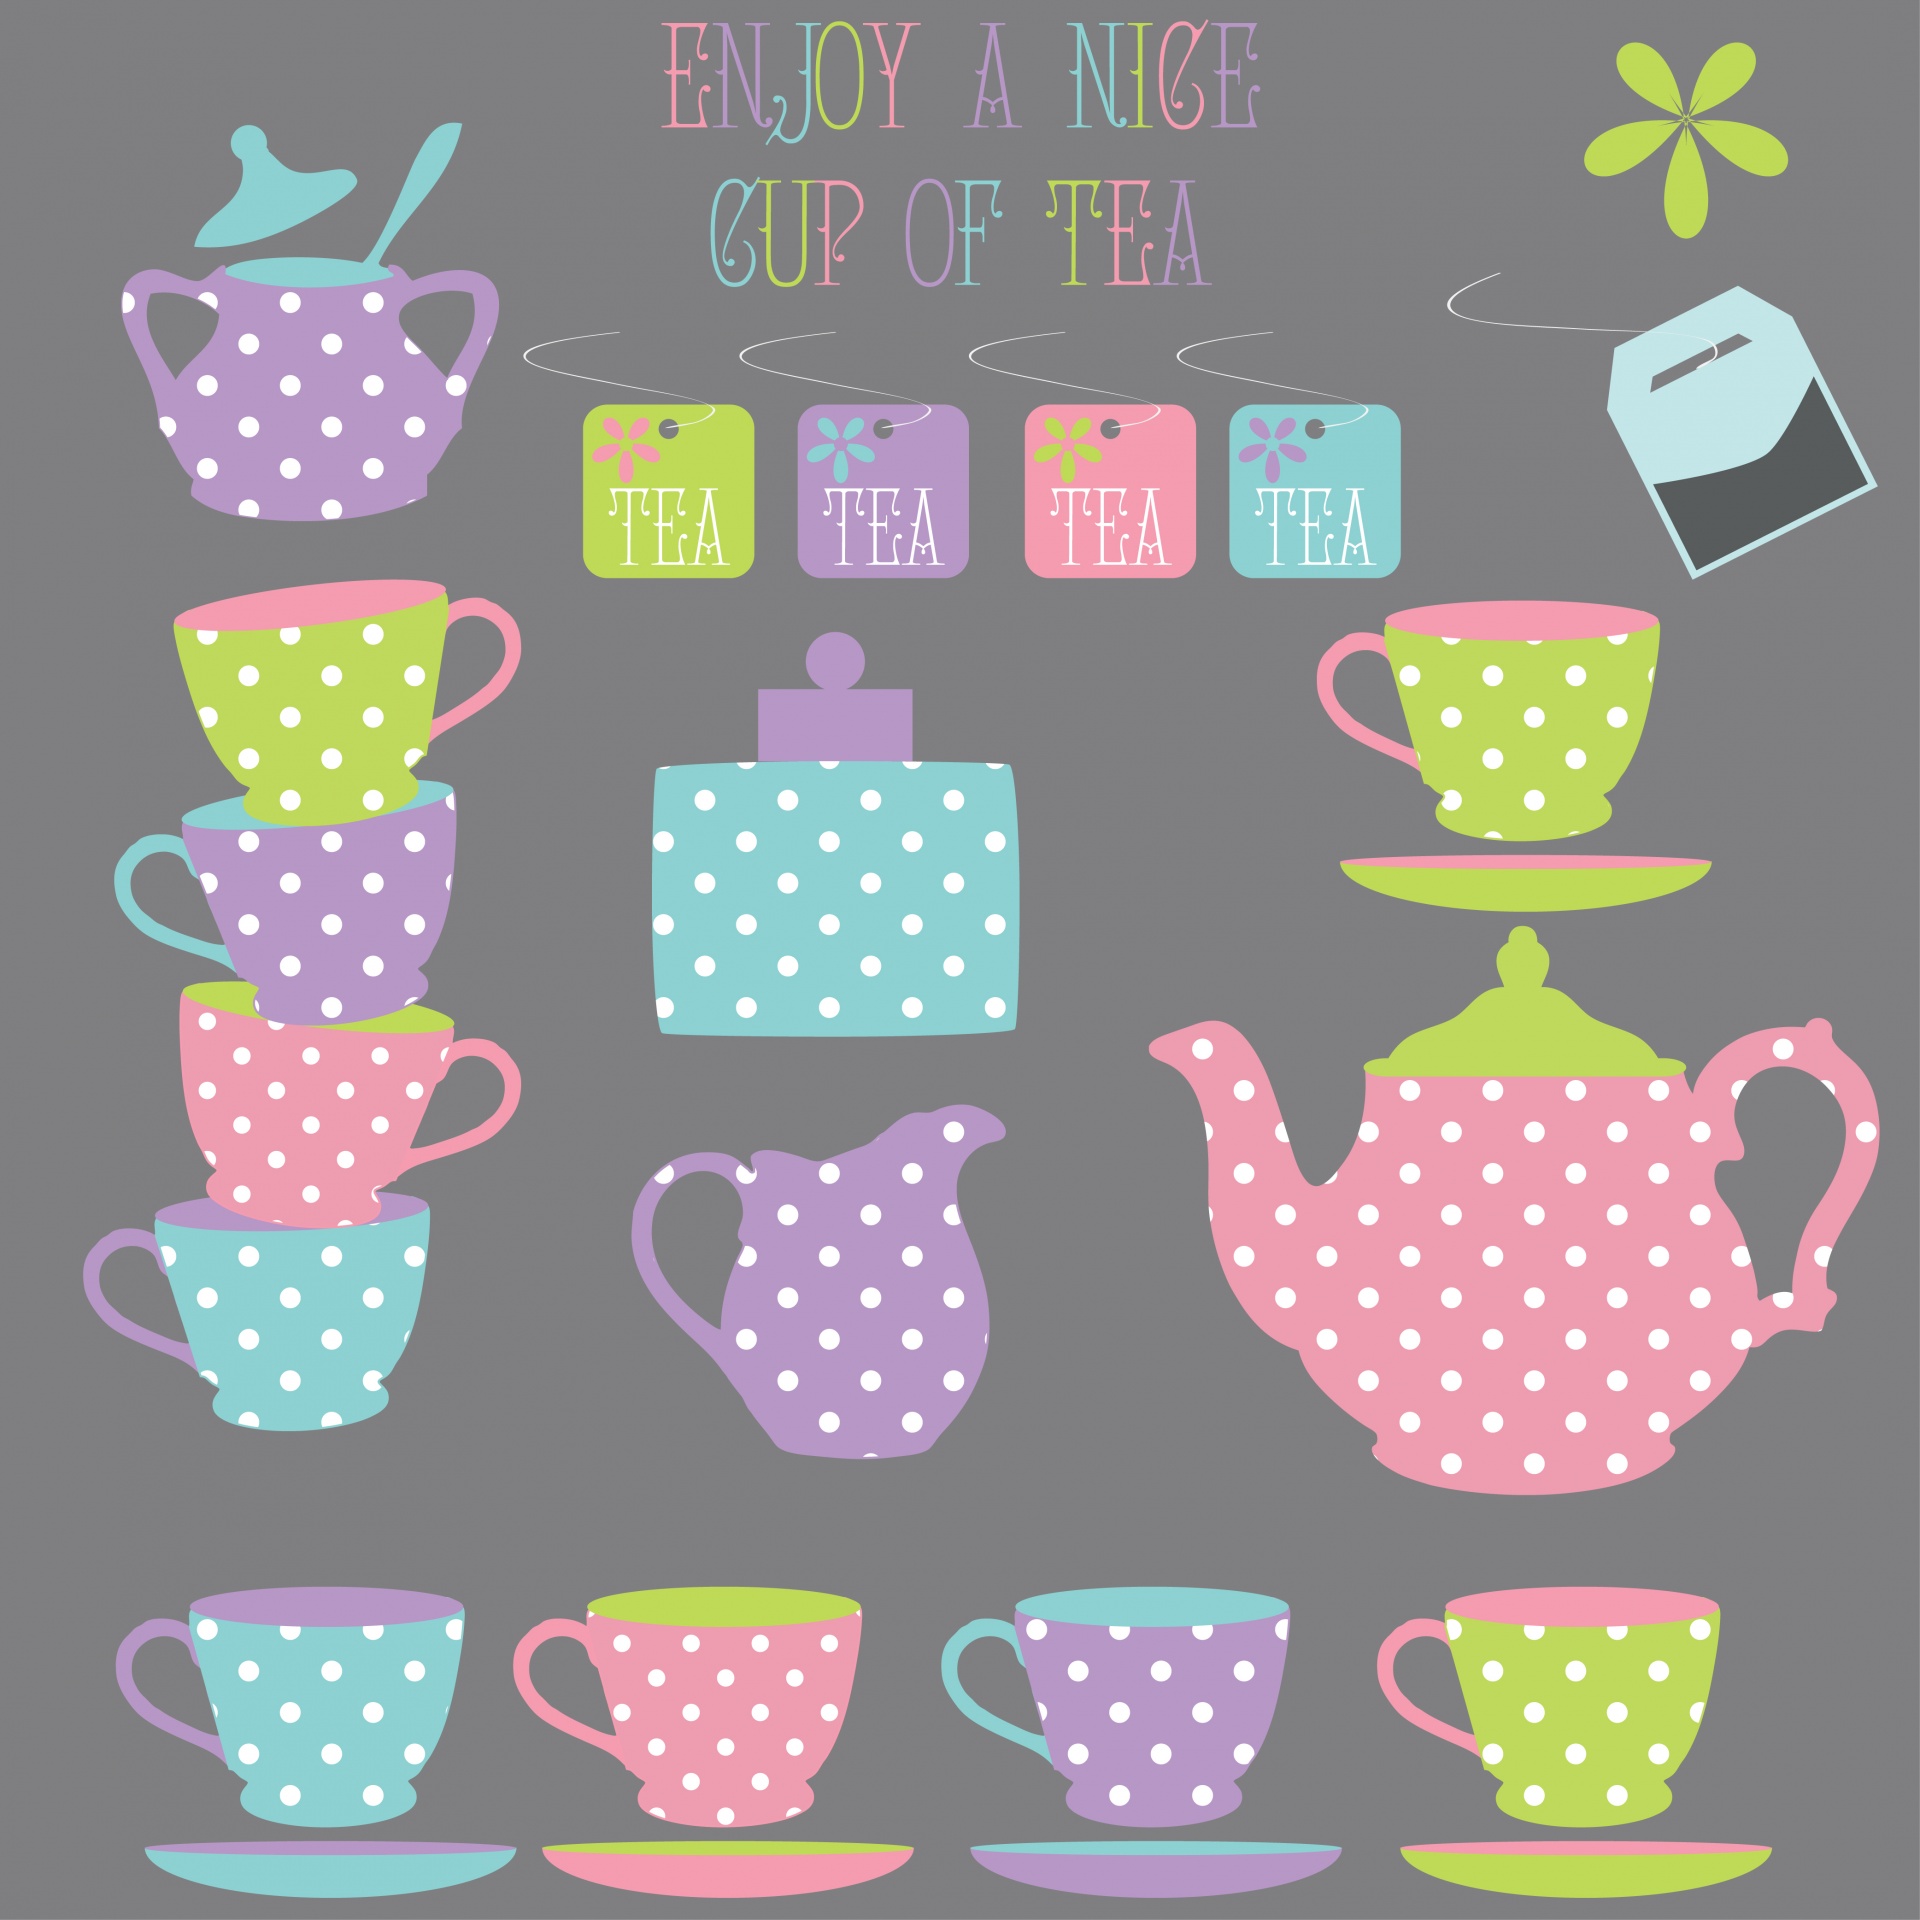 Tea Time Illustration Background